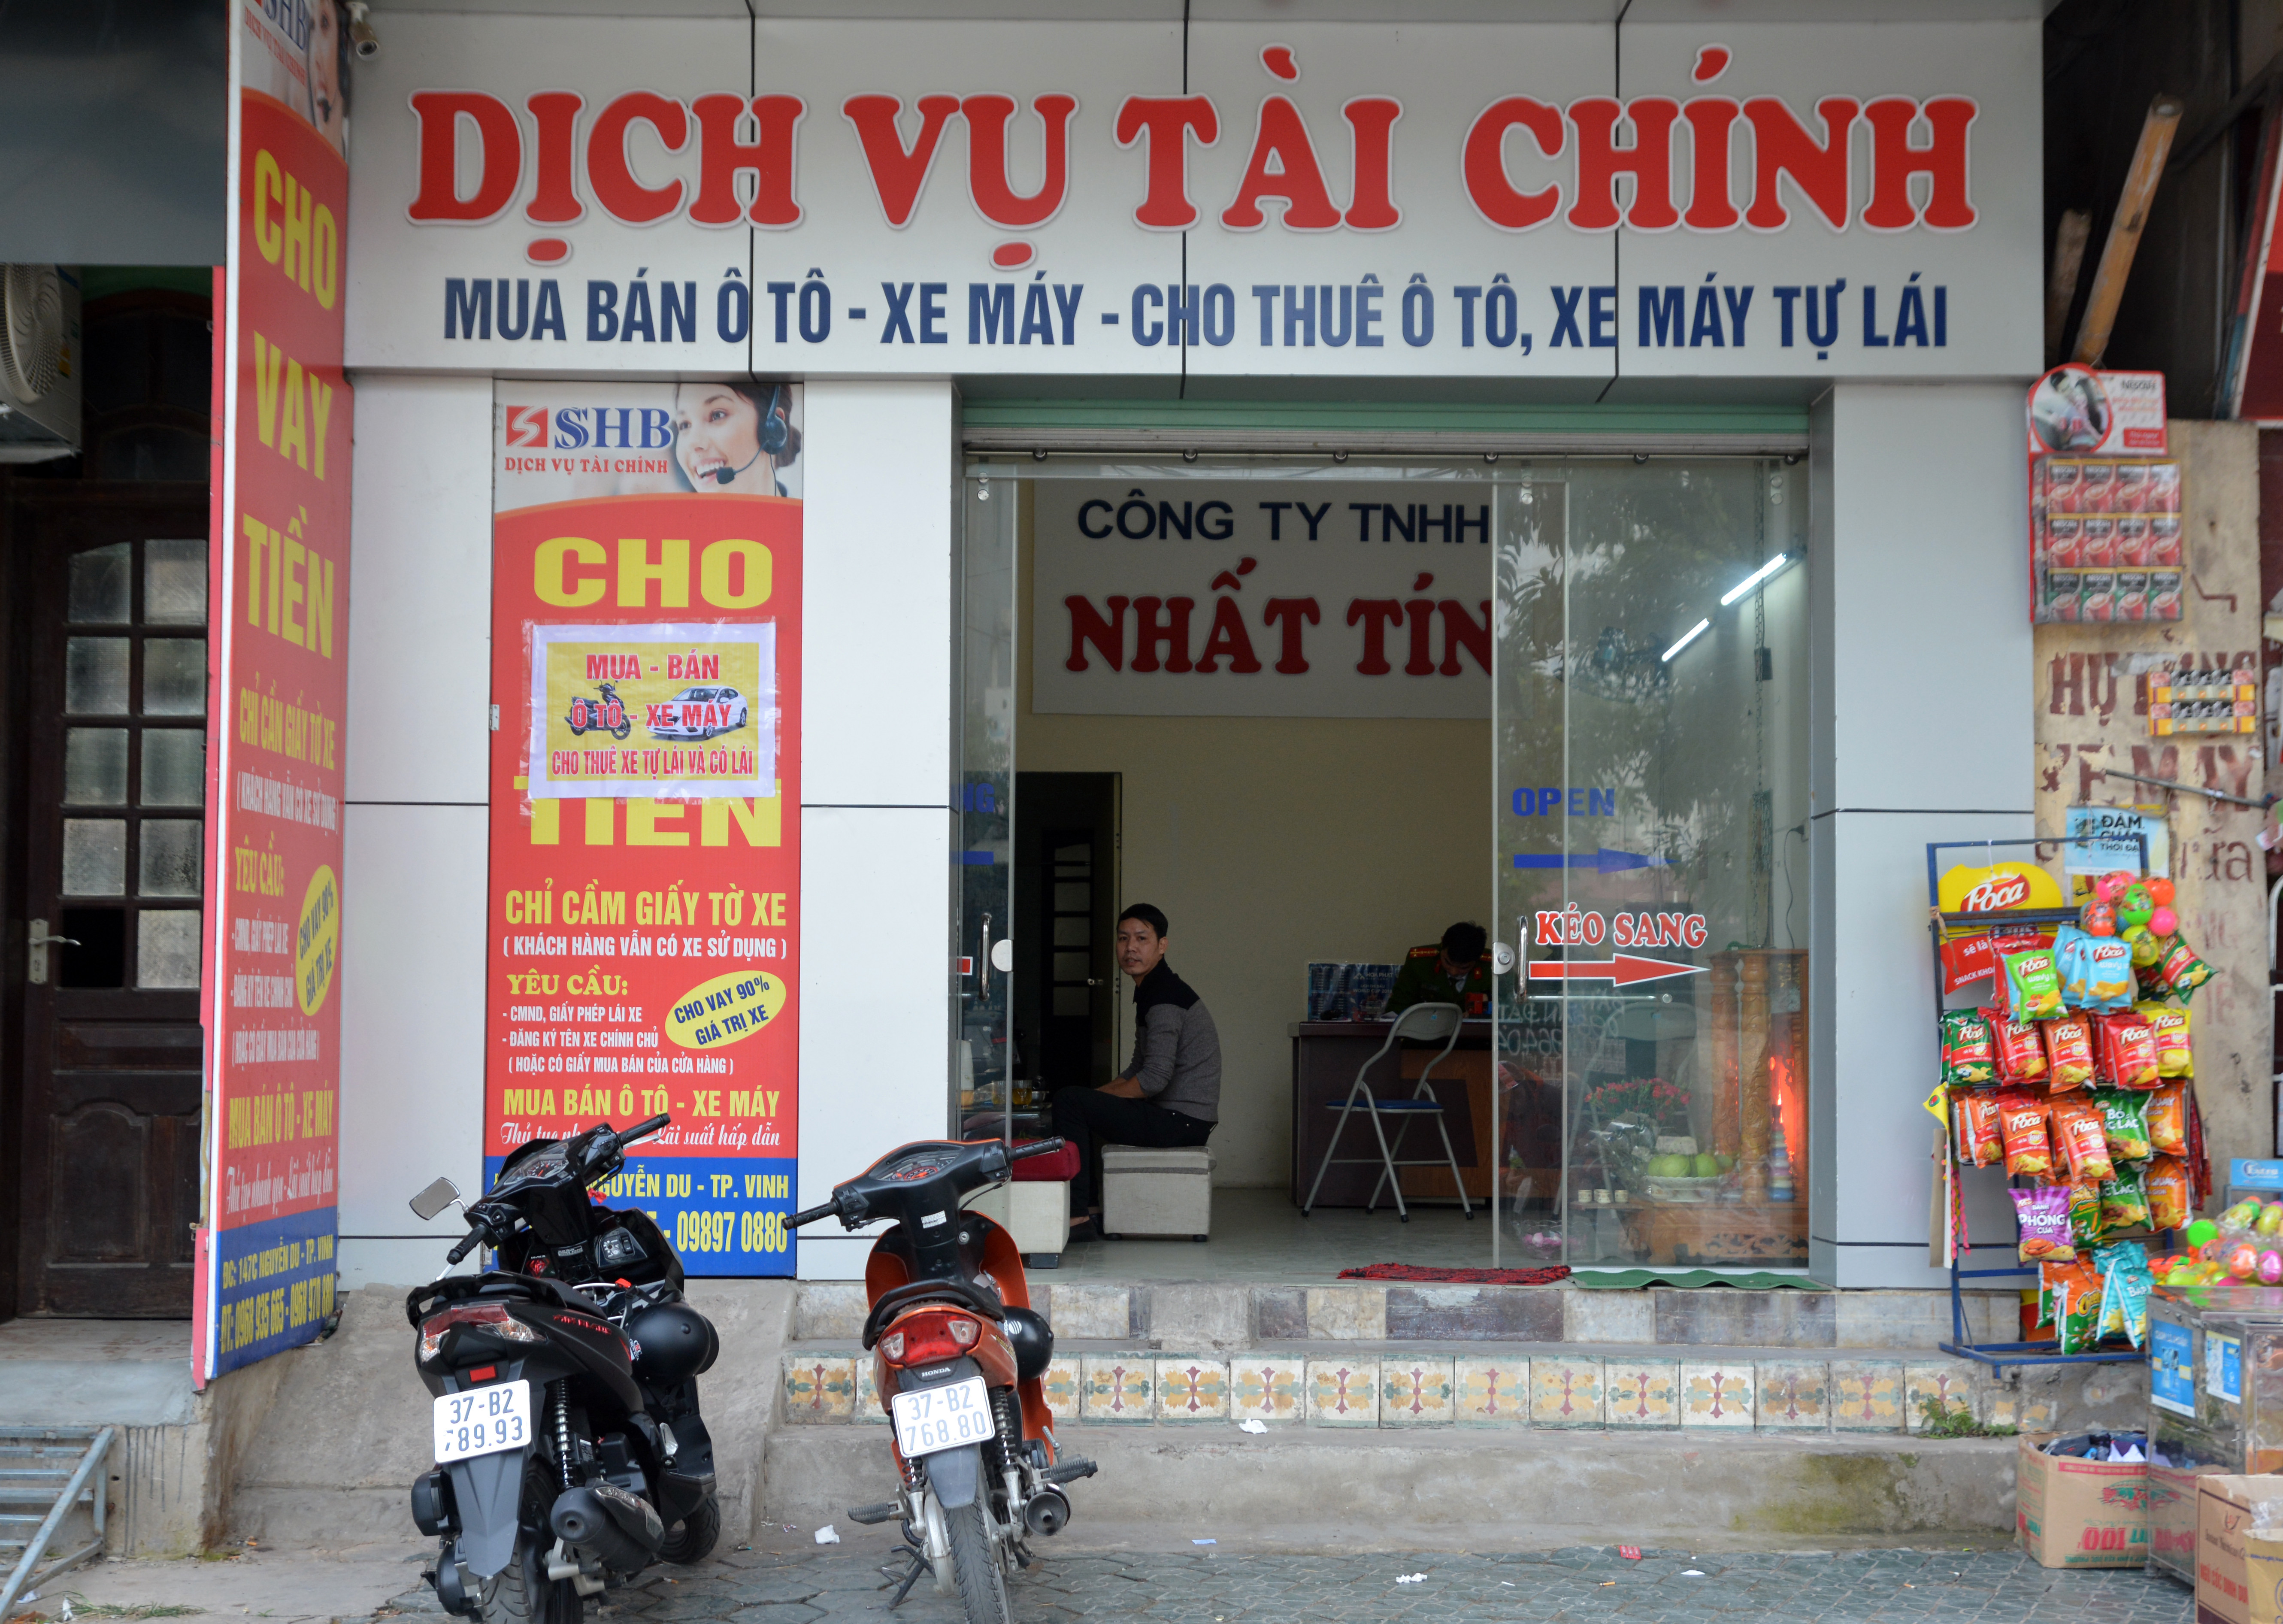 Trên địa bàn tỉnh Nghệ An hiện có 113 cơ sở kinh doanh dịch vụ cầm đồ, 102 cơ sở kinh doanh dịch vụ tài chính. Ảnh: Tâm Khôi Cường